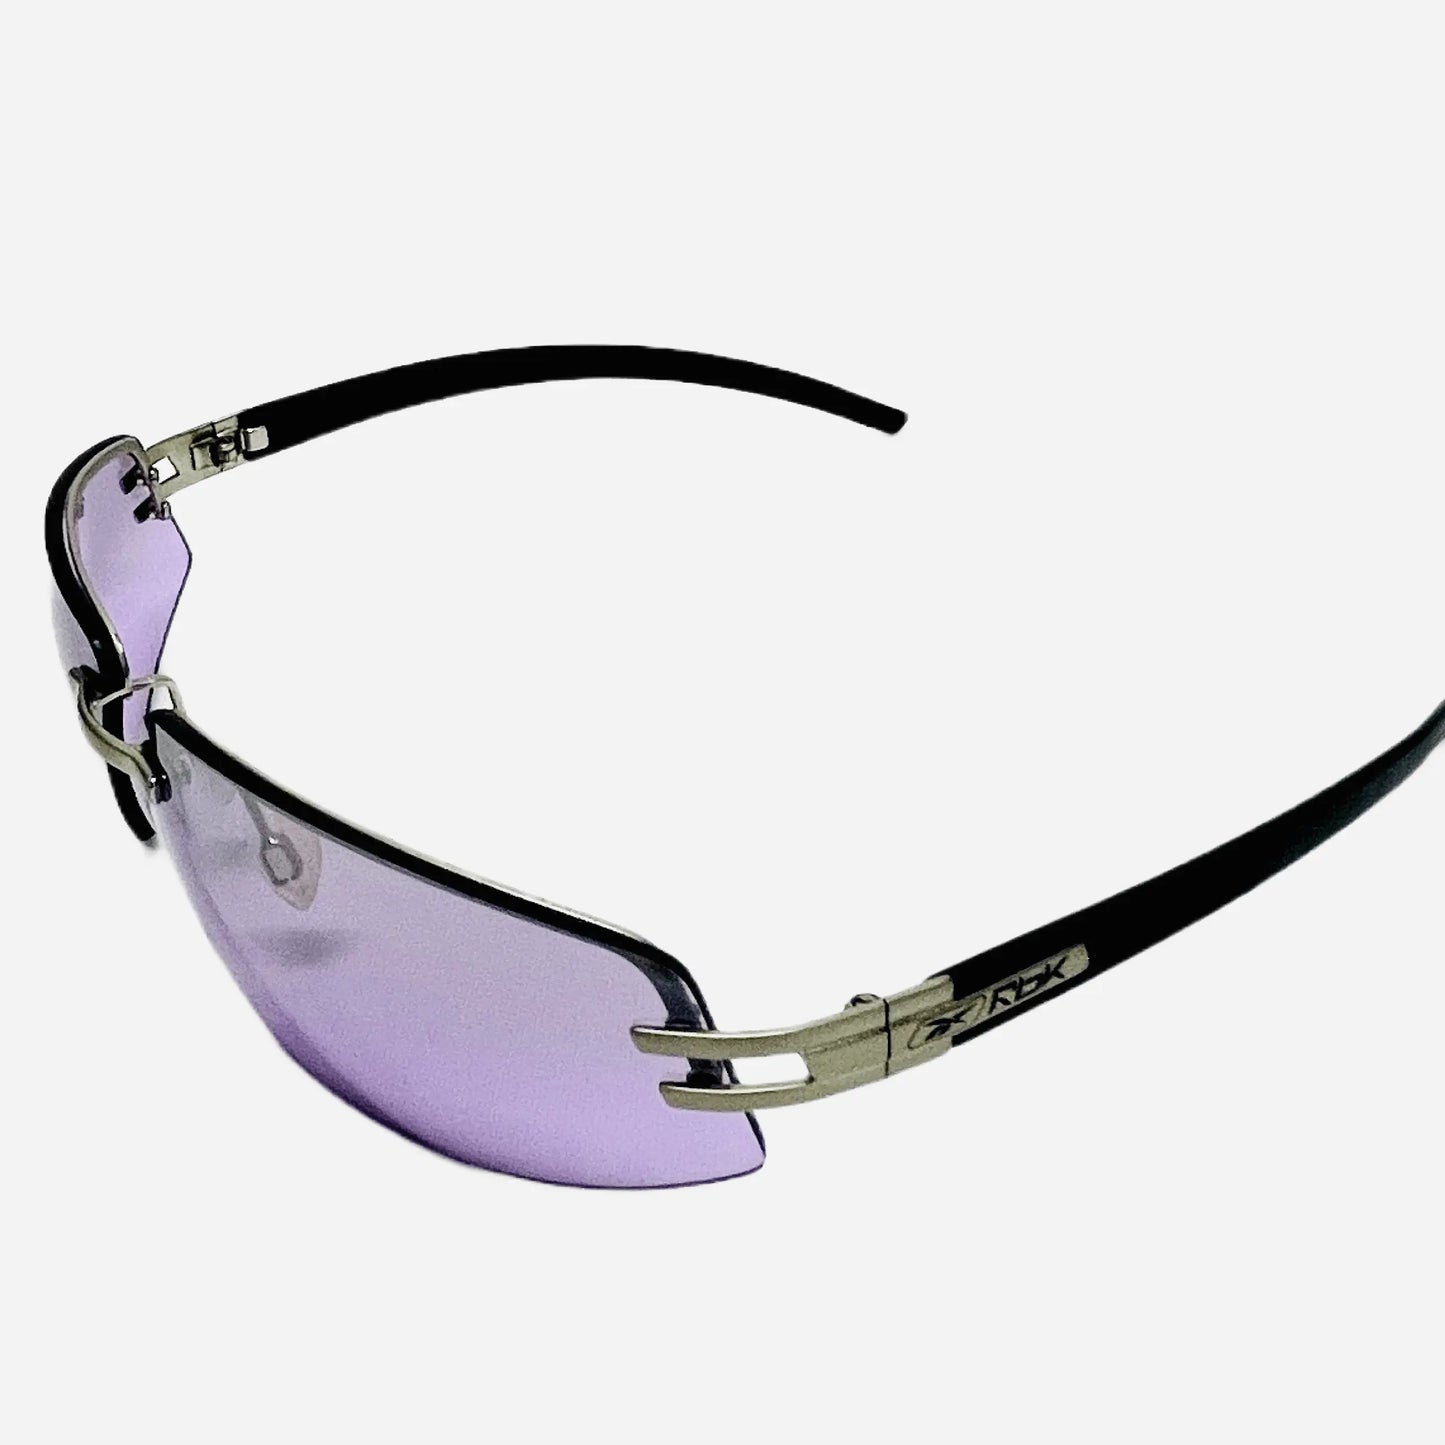 Vintage-Rebook-Sonnenbrille-Sunglasses-Schnelle-Brille-90s-side-back